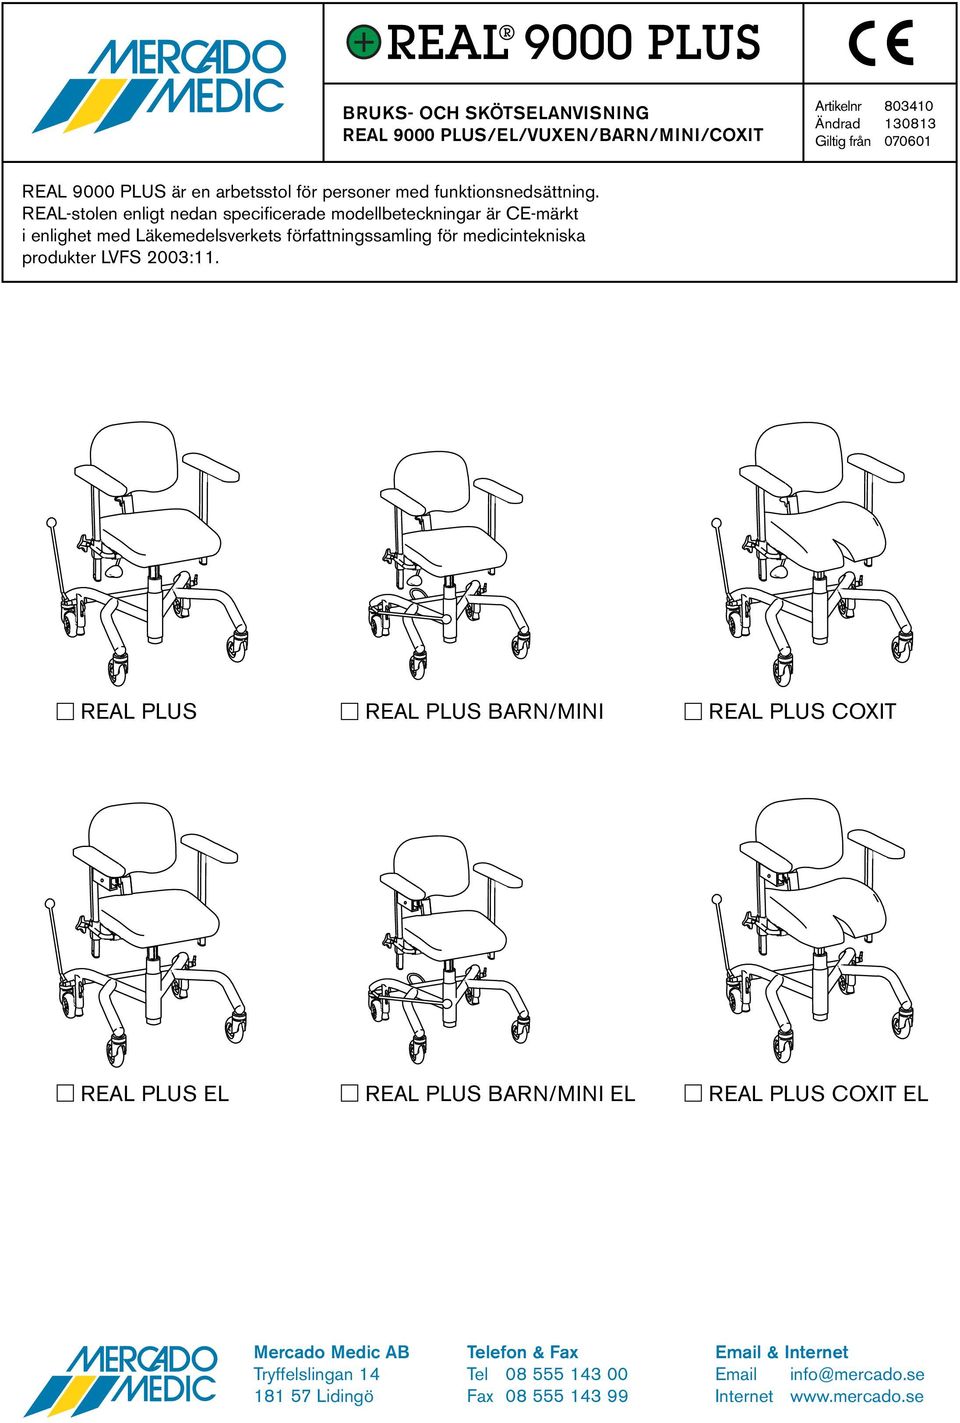 REAL-stolen enligt nedan specificerade modellbeteckningar är CE-märkt i enlighet med Läkemedelsverkets författningssamling för medicintekniska